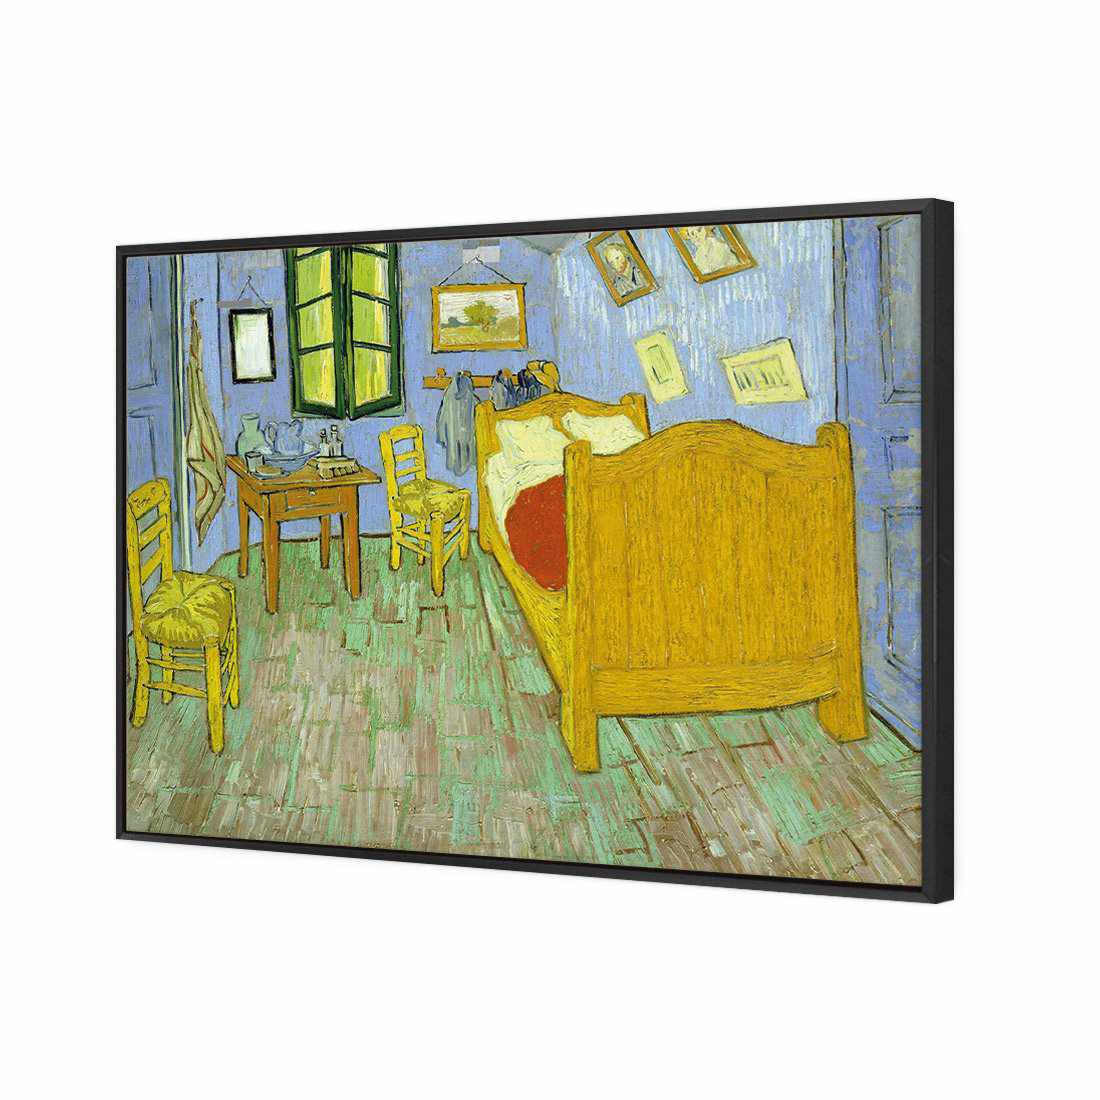 Vincent's Bedroom - Van Gogh Canvas Art-Canvas-Wall Art Designs-45x30cm-Canvas - Black Frame-Wall Art Designs